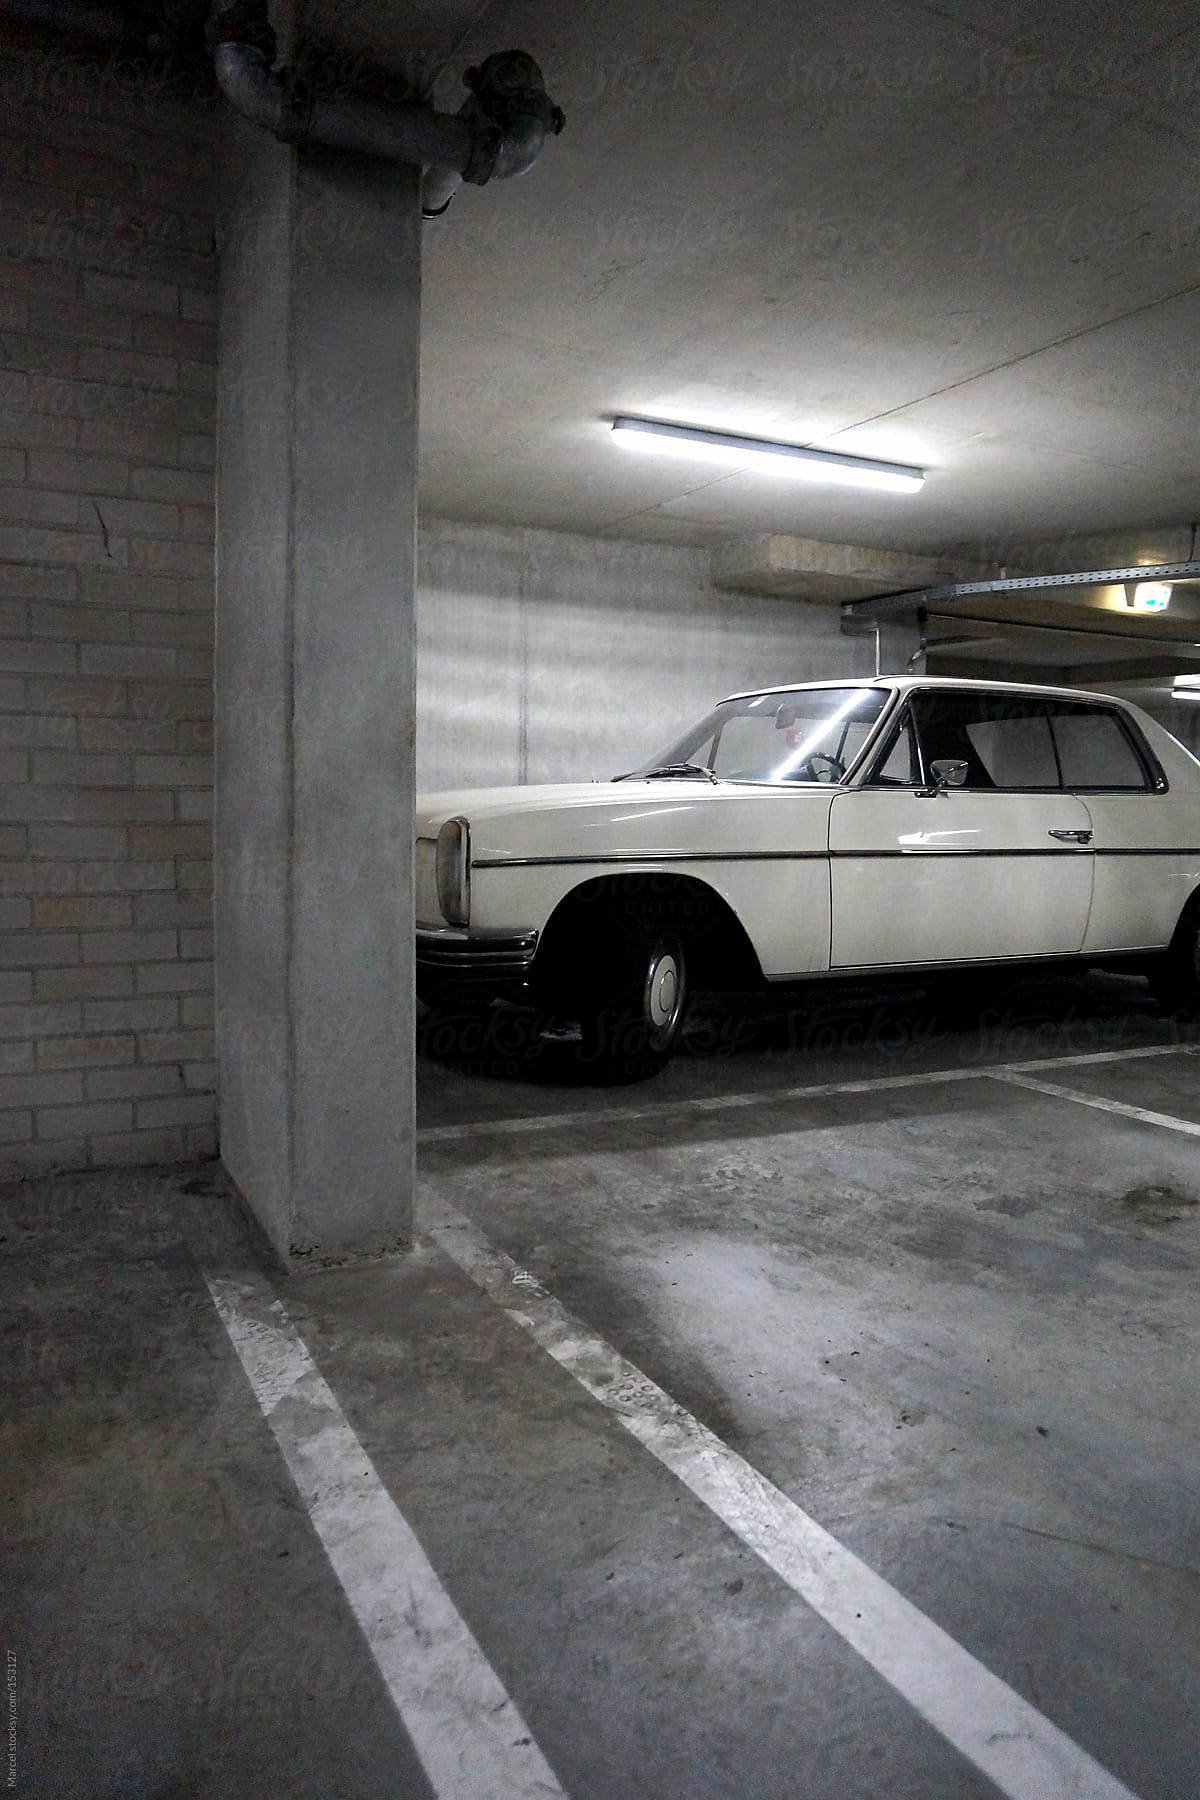 Vintage car in parking garage